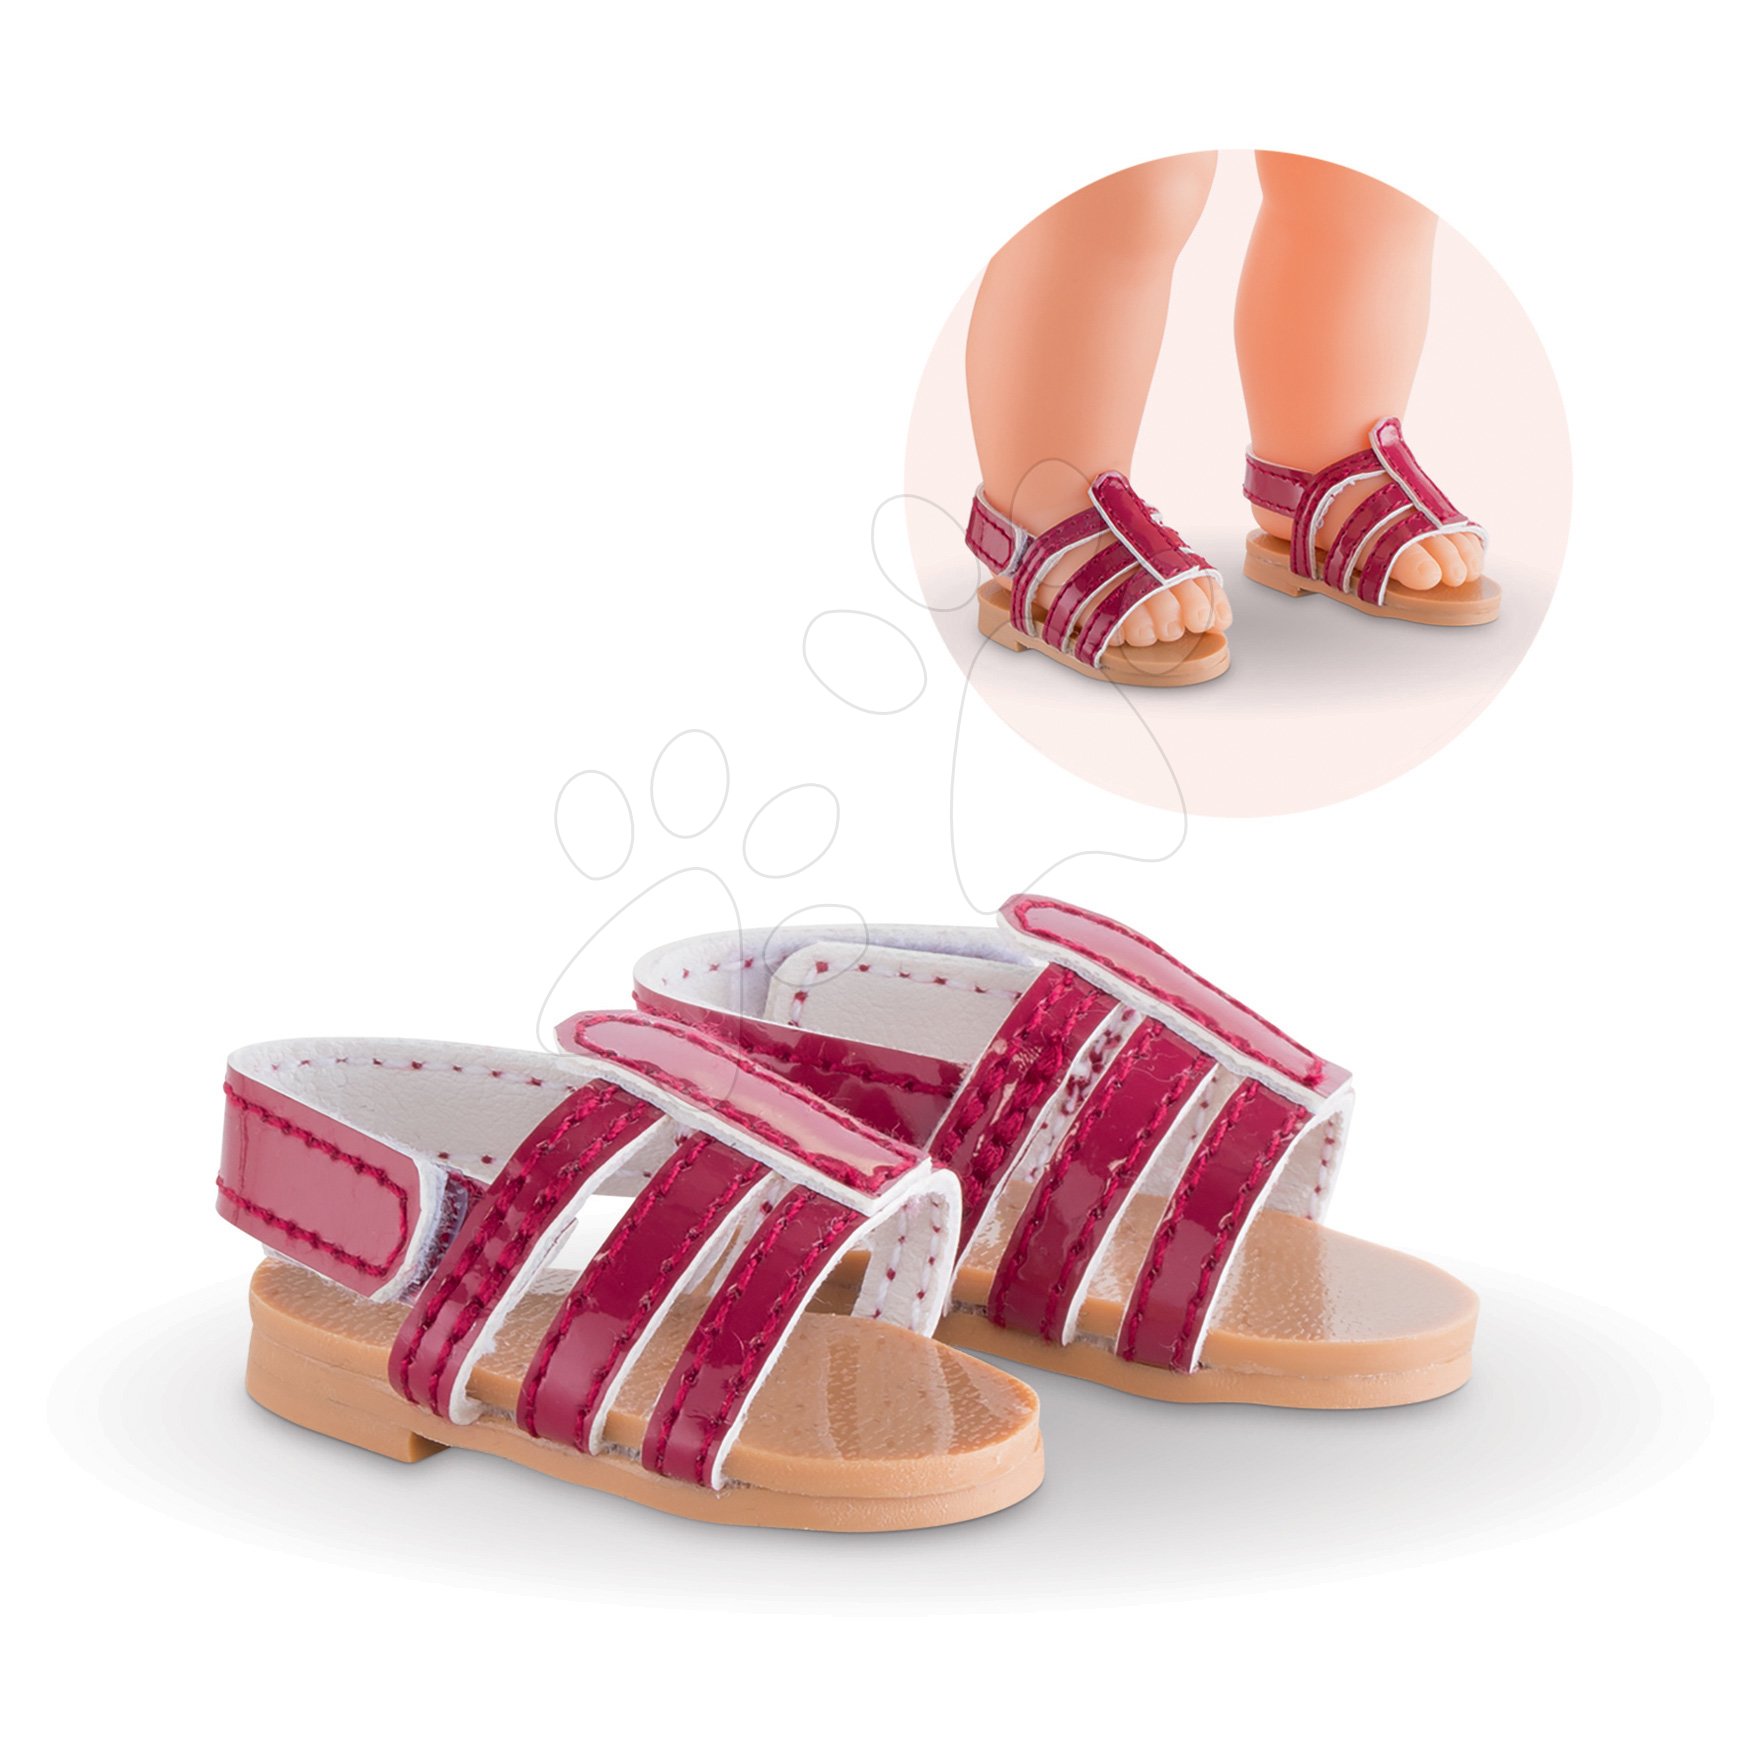 Topánky Sandals Cherry Ma Corolle pre 36 cm bábiku od 4 rokov